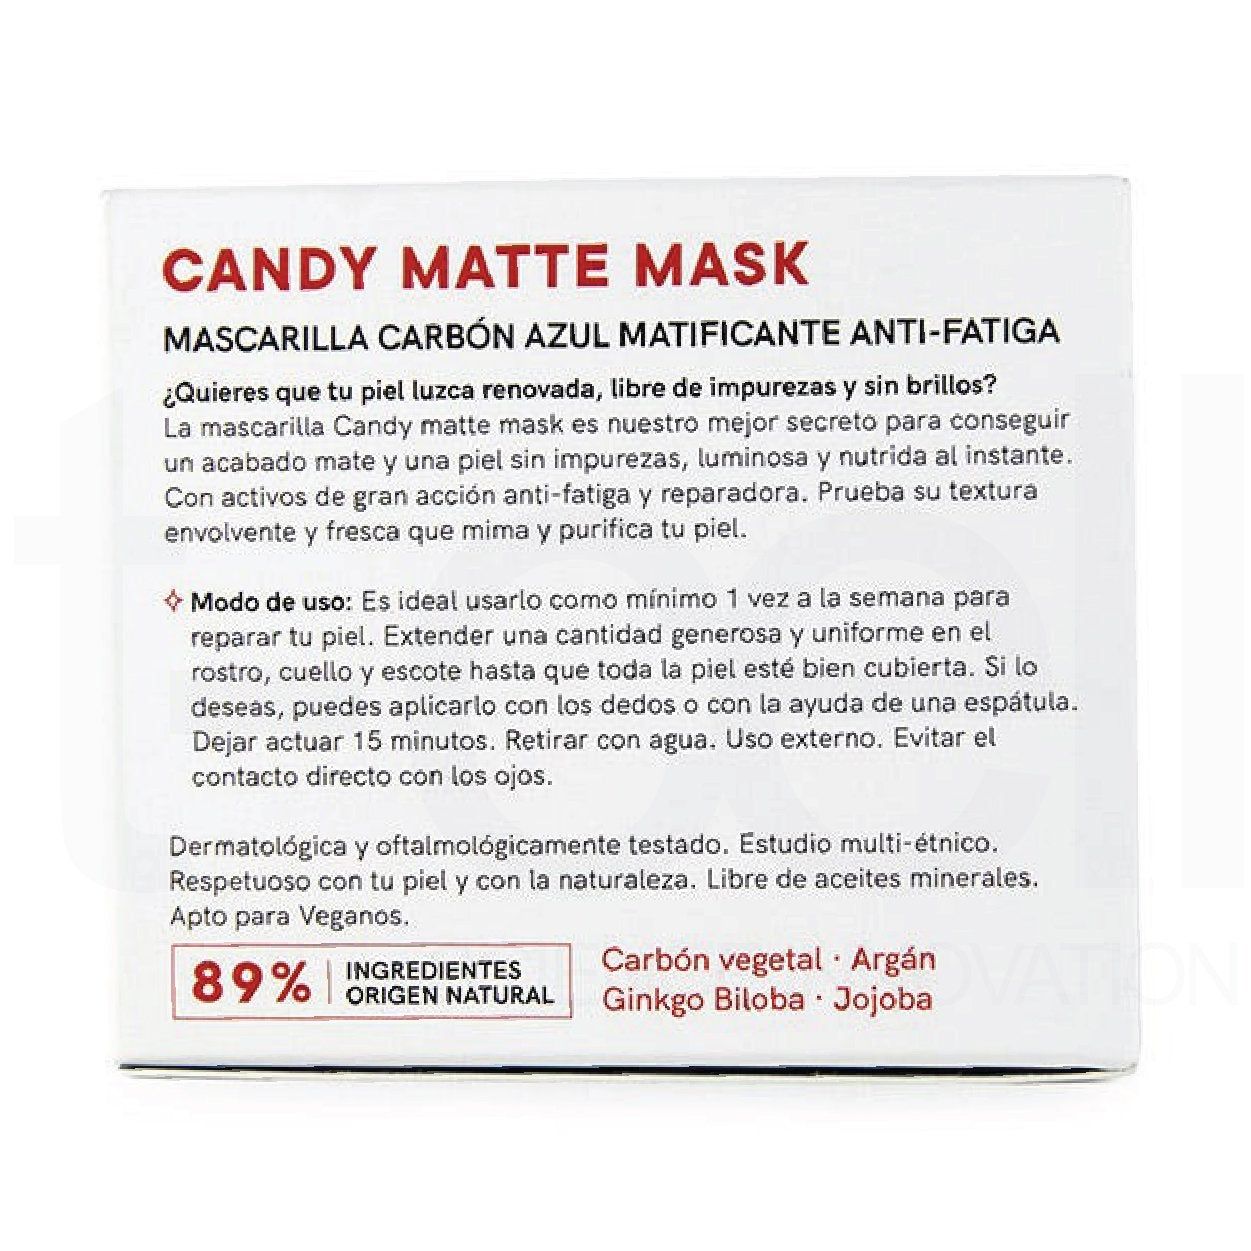  Mặt Nạ Làm Sạch Da, Giảm Nhờn Cho Da Dầu Mụn - Lullage Candy Matte Mask 